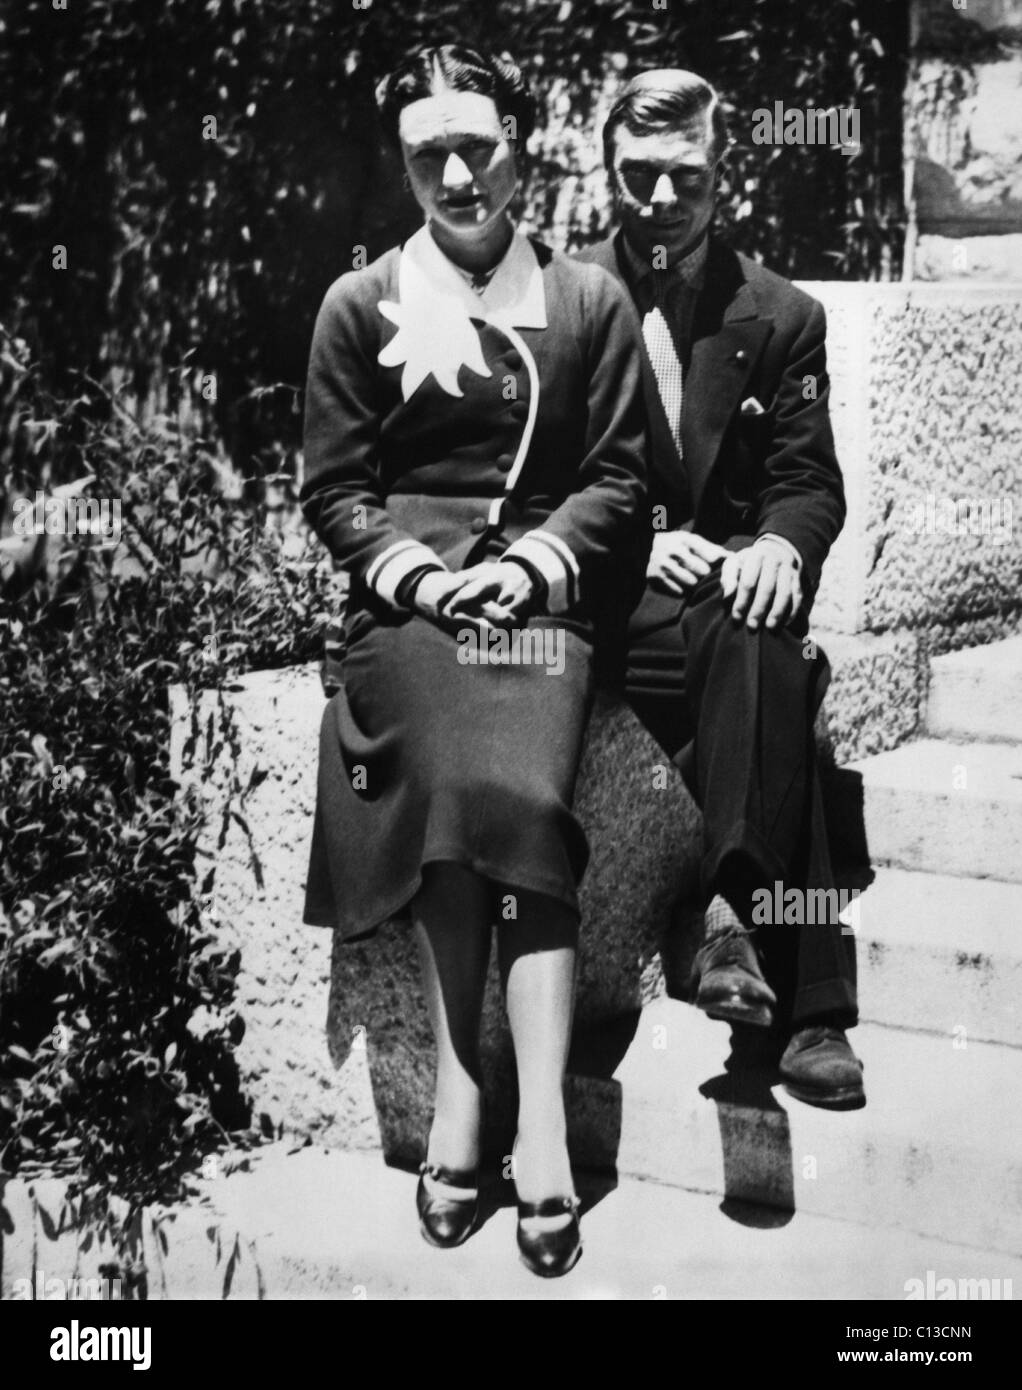 La Duchesse de Windsor, Wallis Simpson et le Prince Edward, duc de Windsor sur leur premier anniversaire de mariage, Chateau de la Croe, Antibes, France, le 3 juin 1938. Banque D'Images